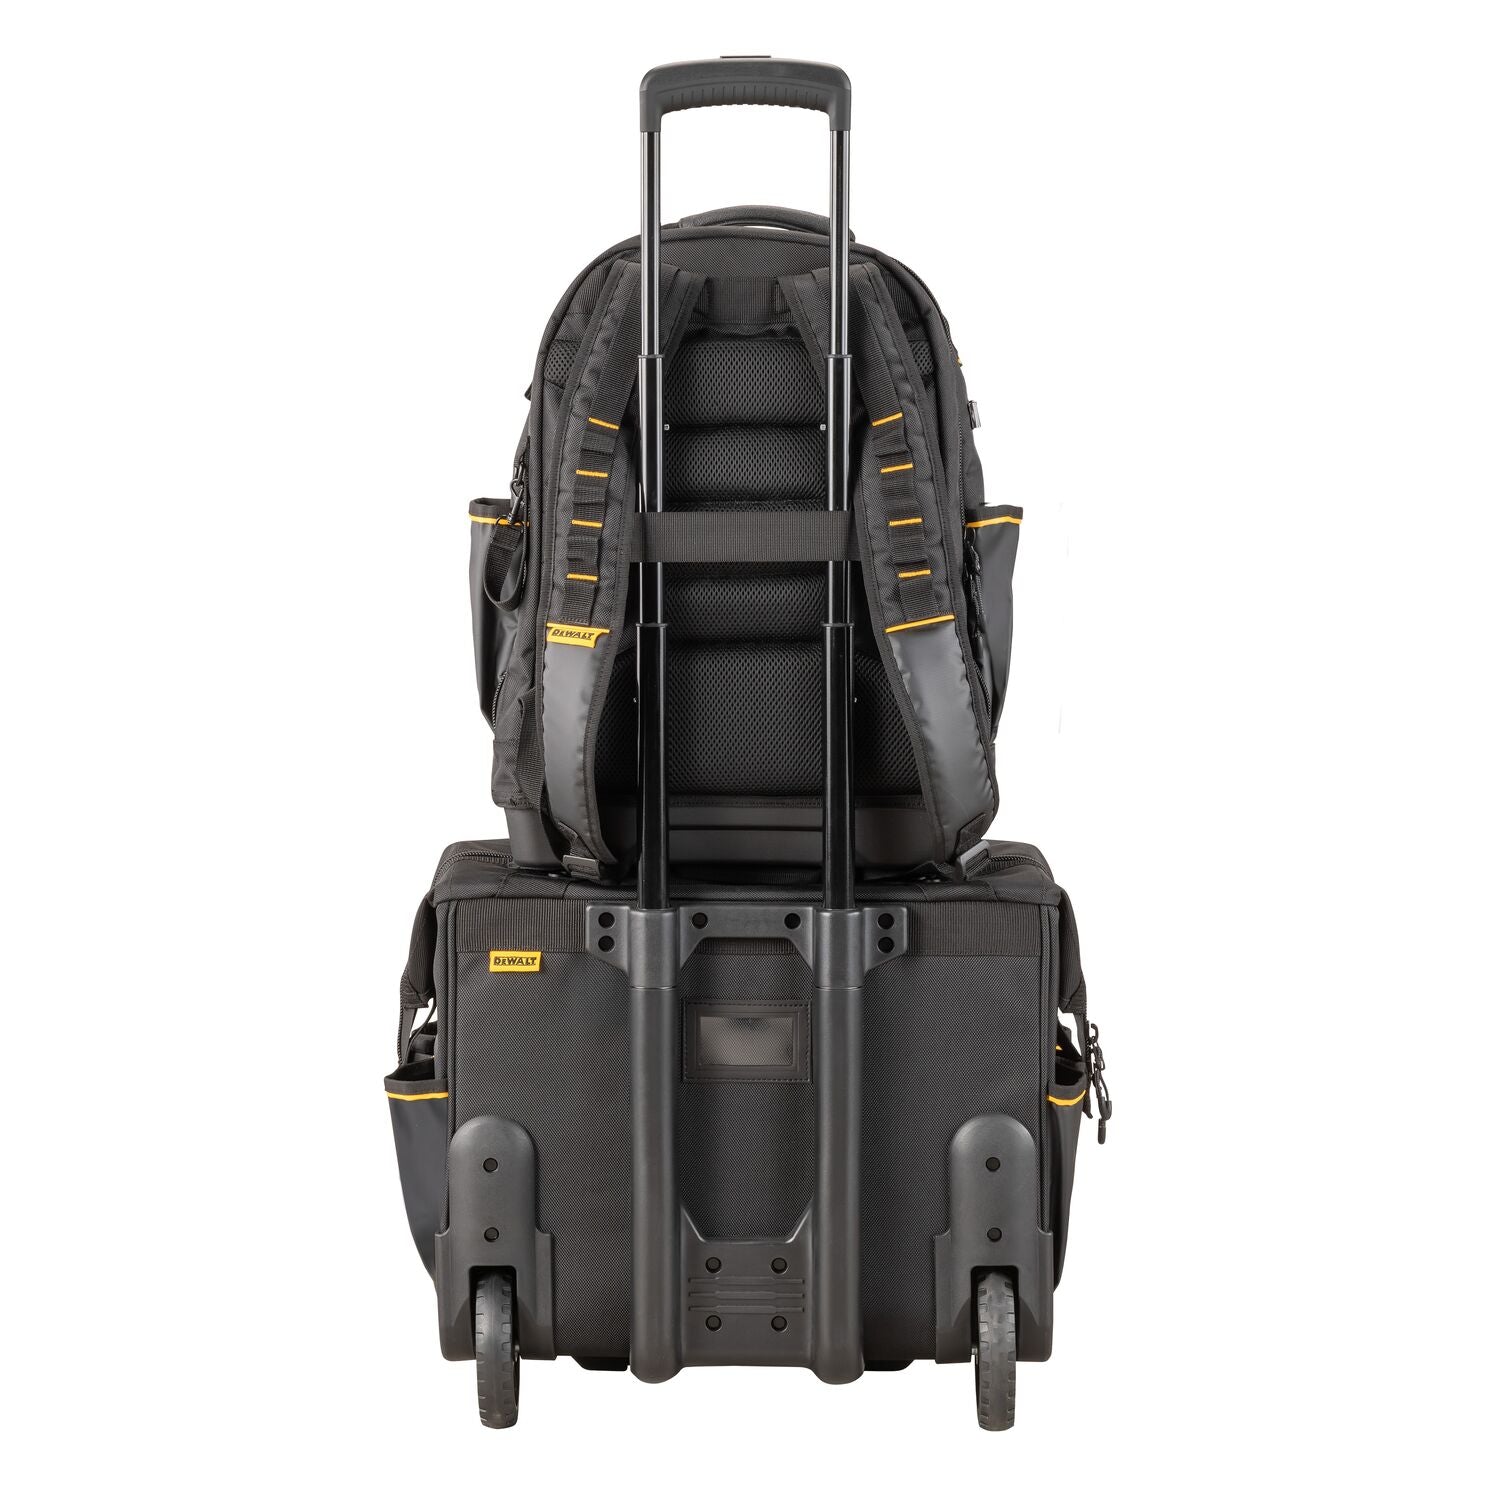 Dewalt DWST560102 - PRO Backpack